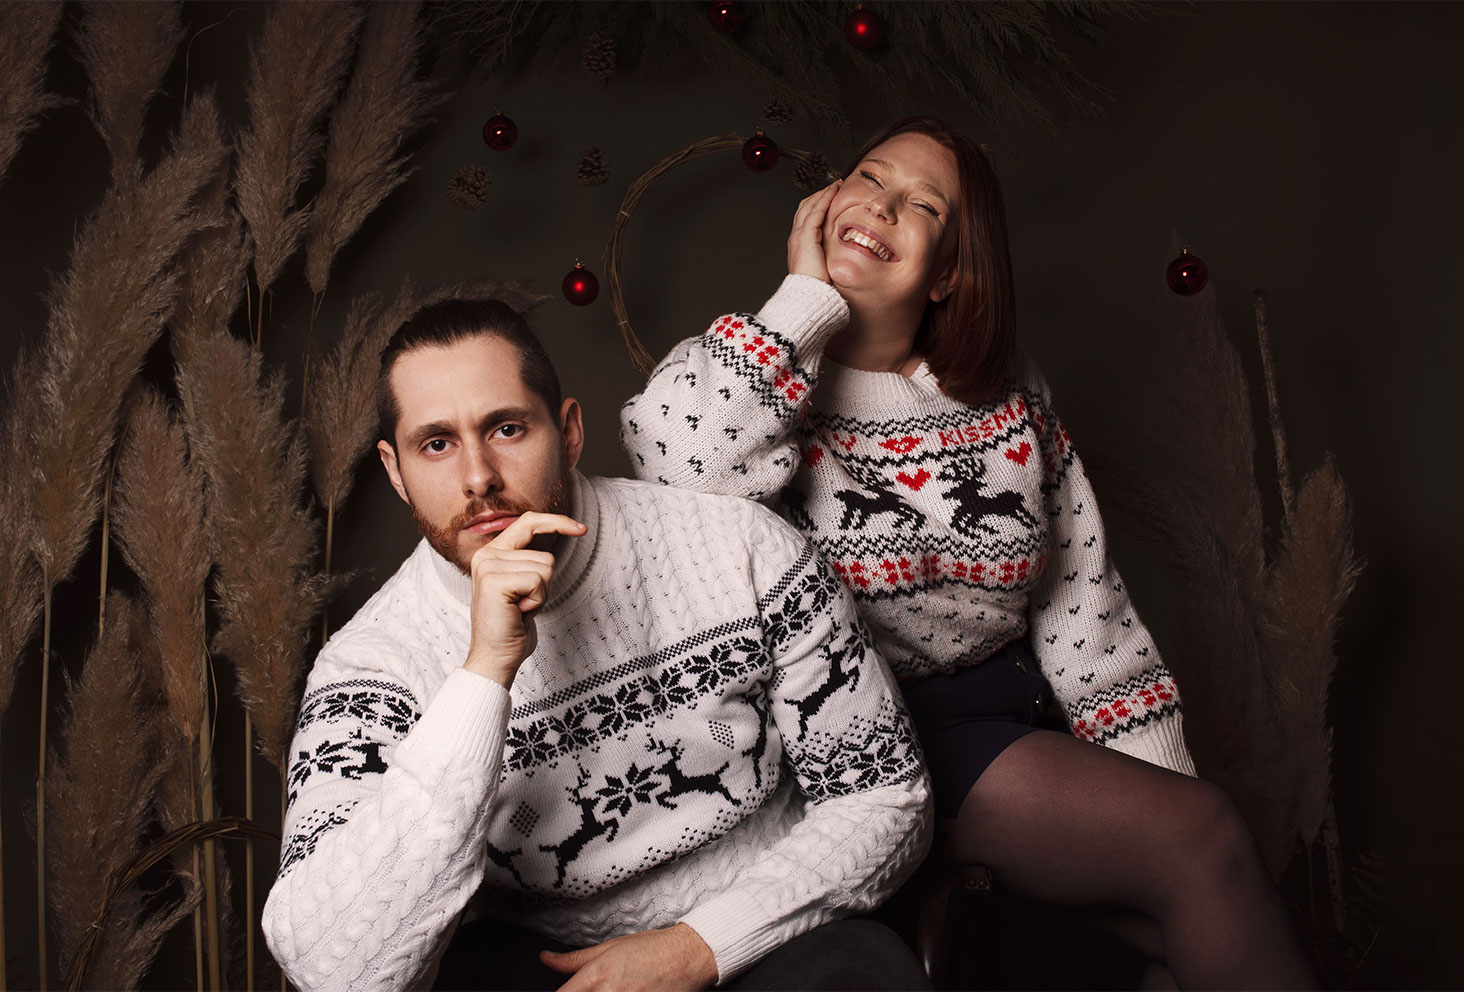 Le bilan 2021 avec une séance photo en couple sur le thème de Noël en studio